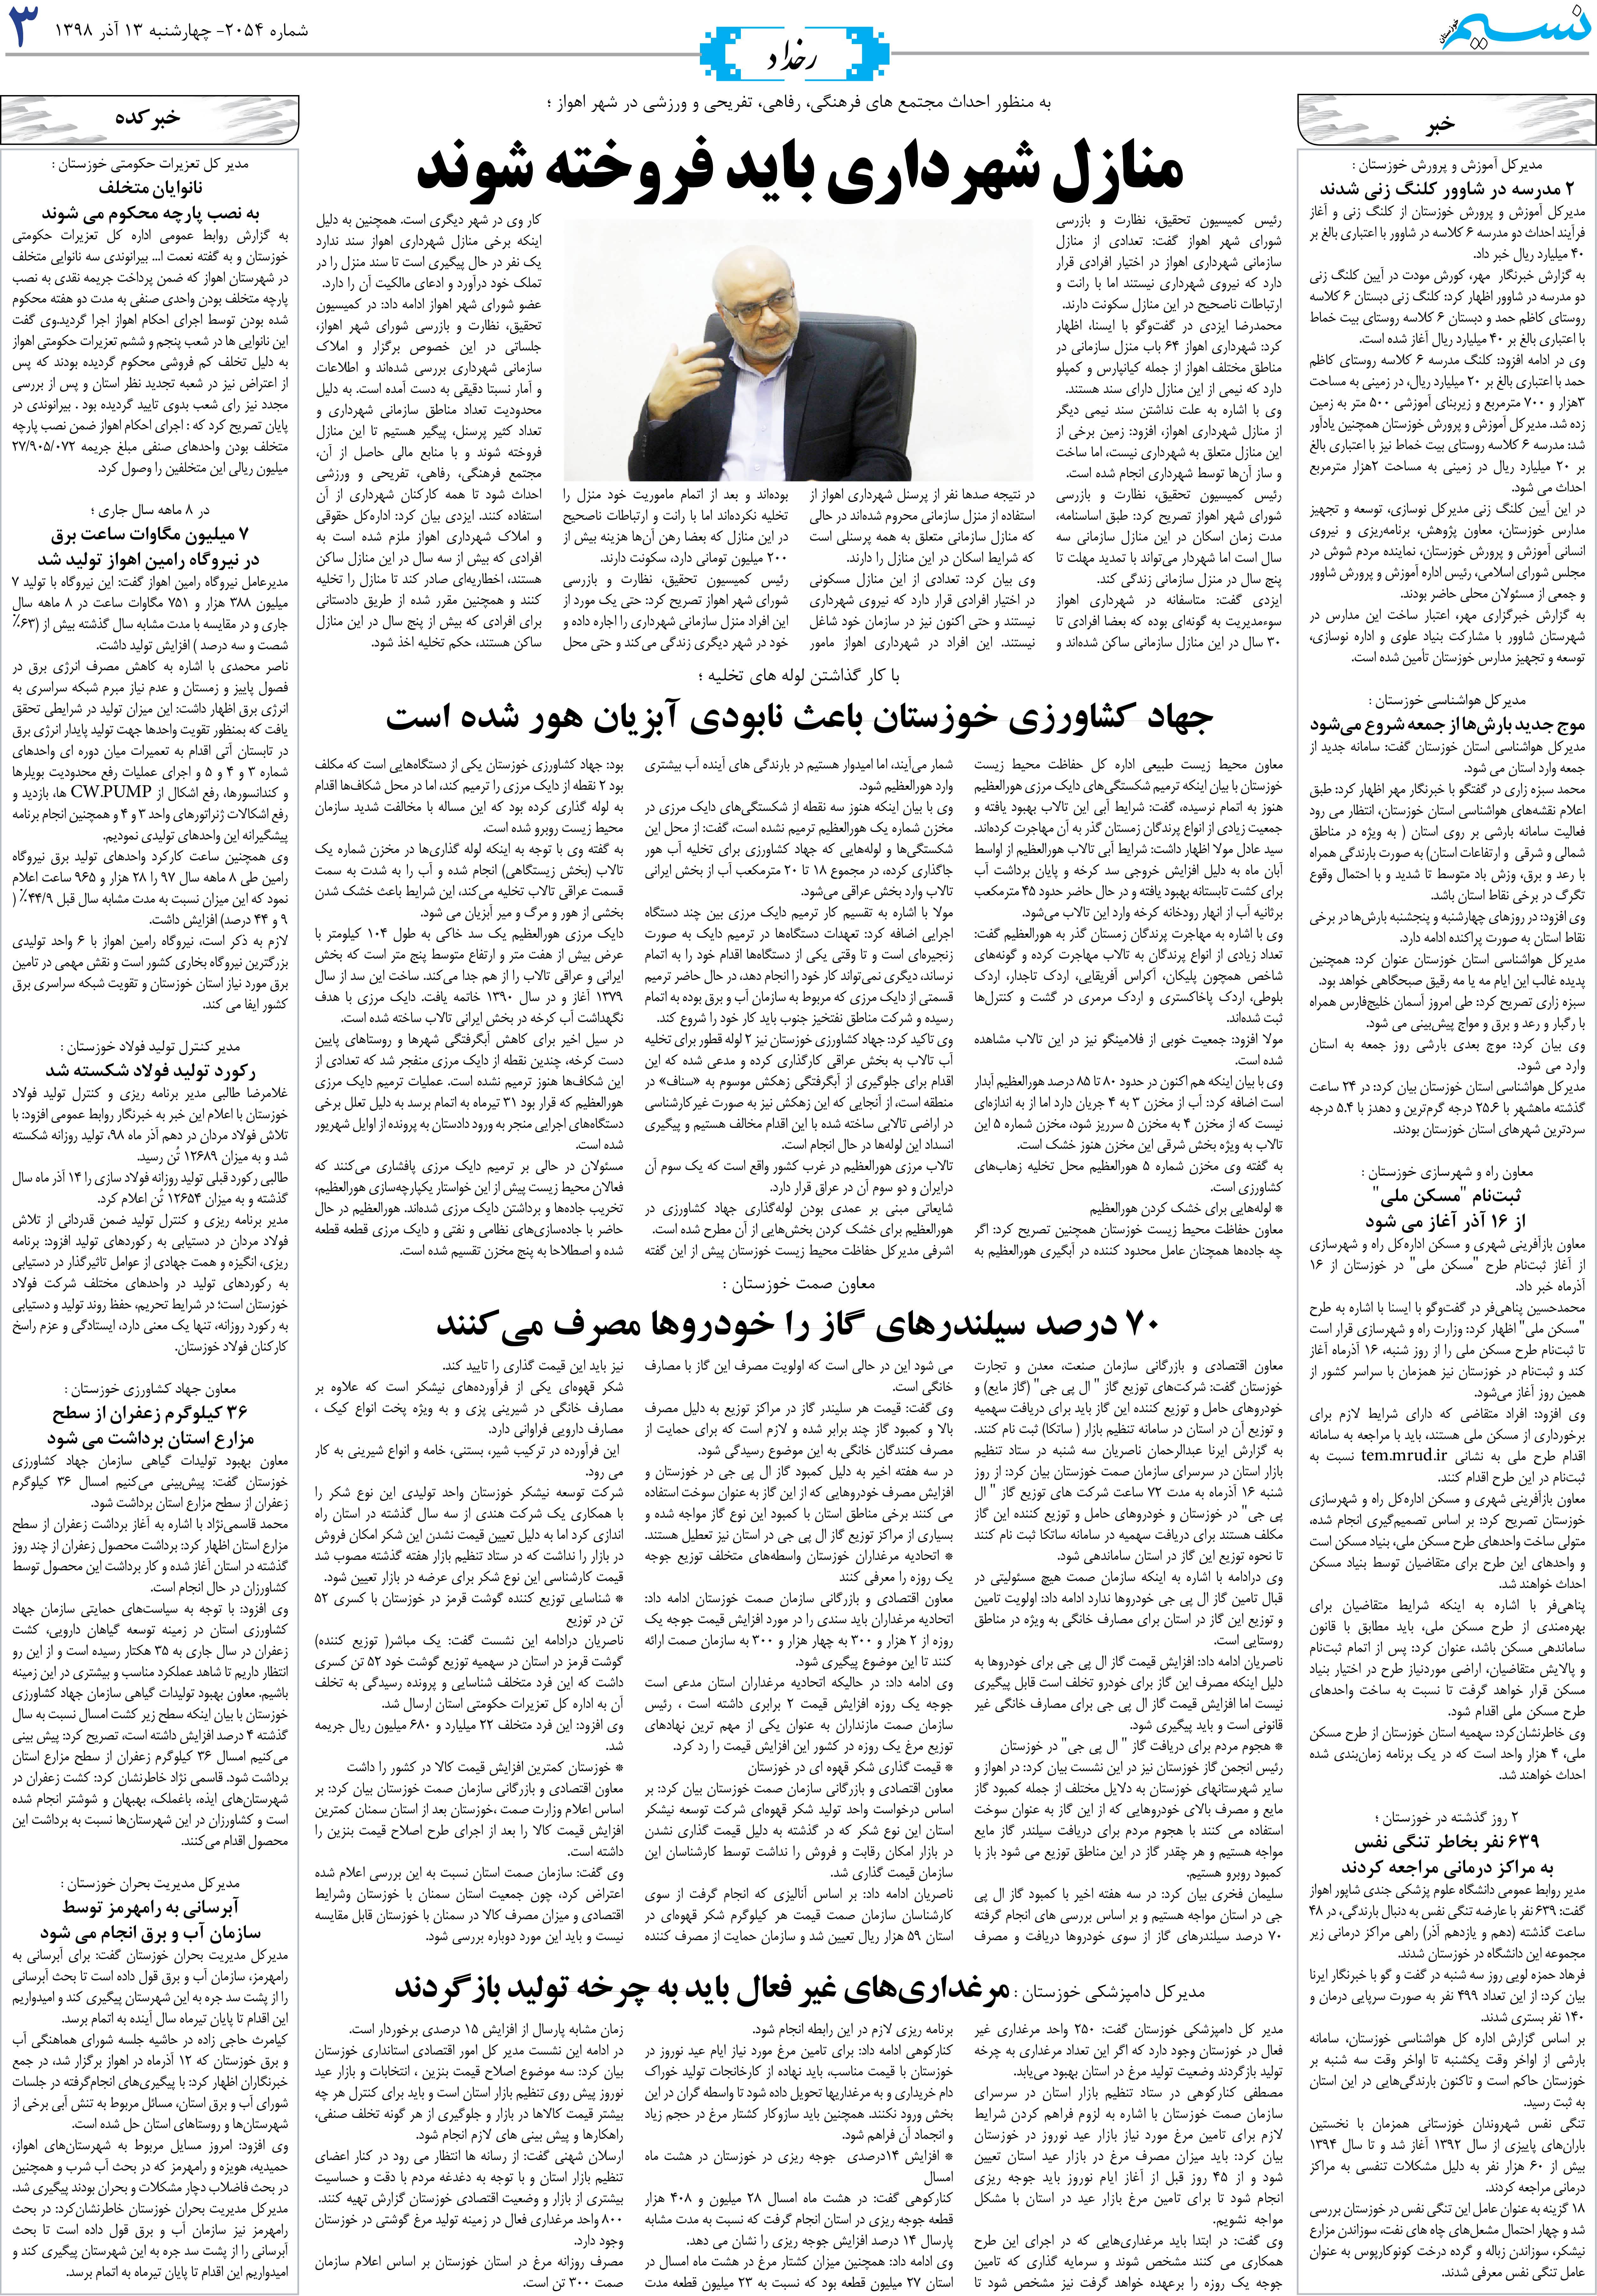 صفحه رخداد روزنامه نسیم شماره 2054